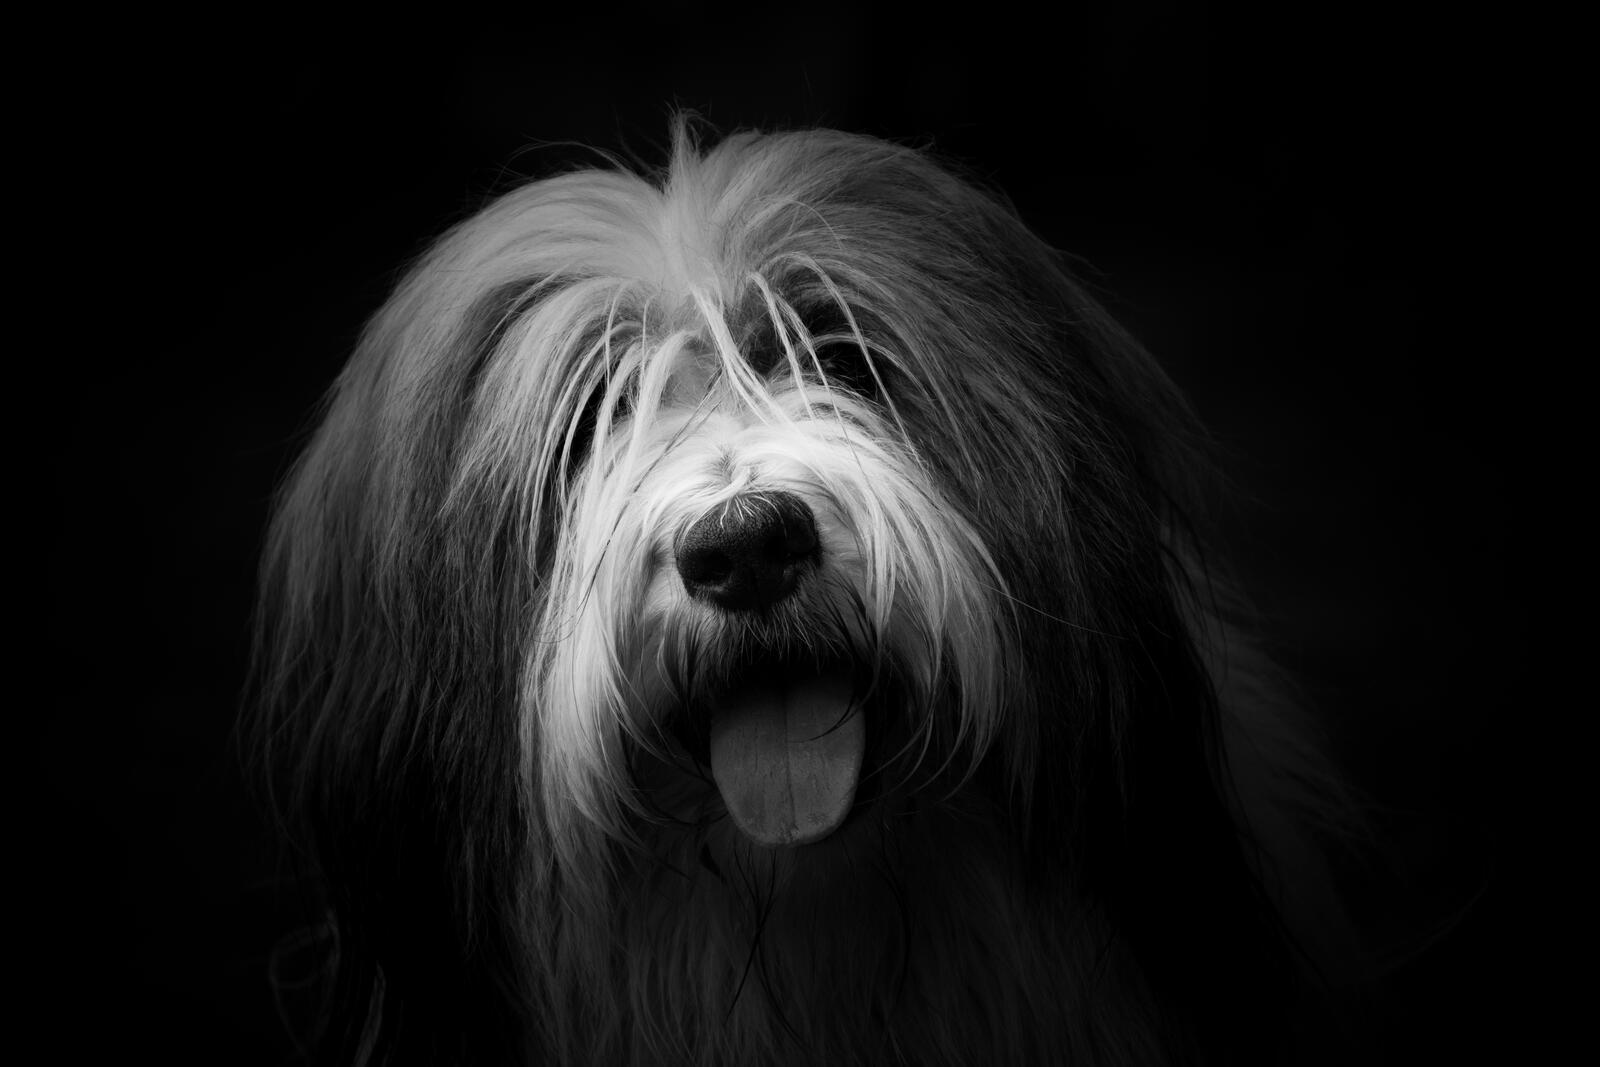 Бесплатное фото Волосатый пес на монохромном фото